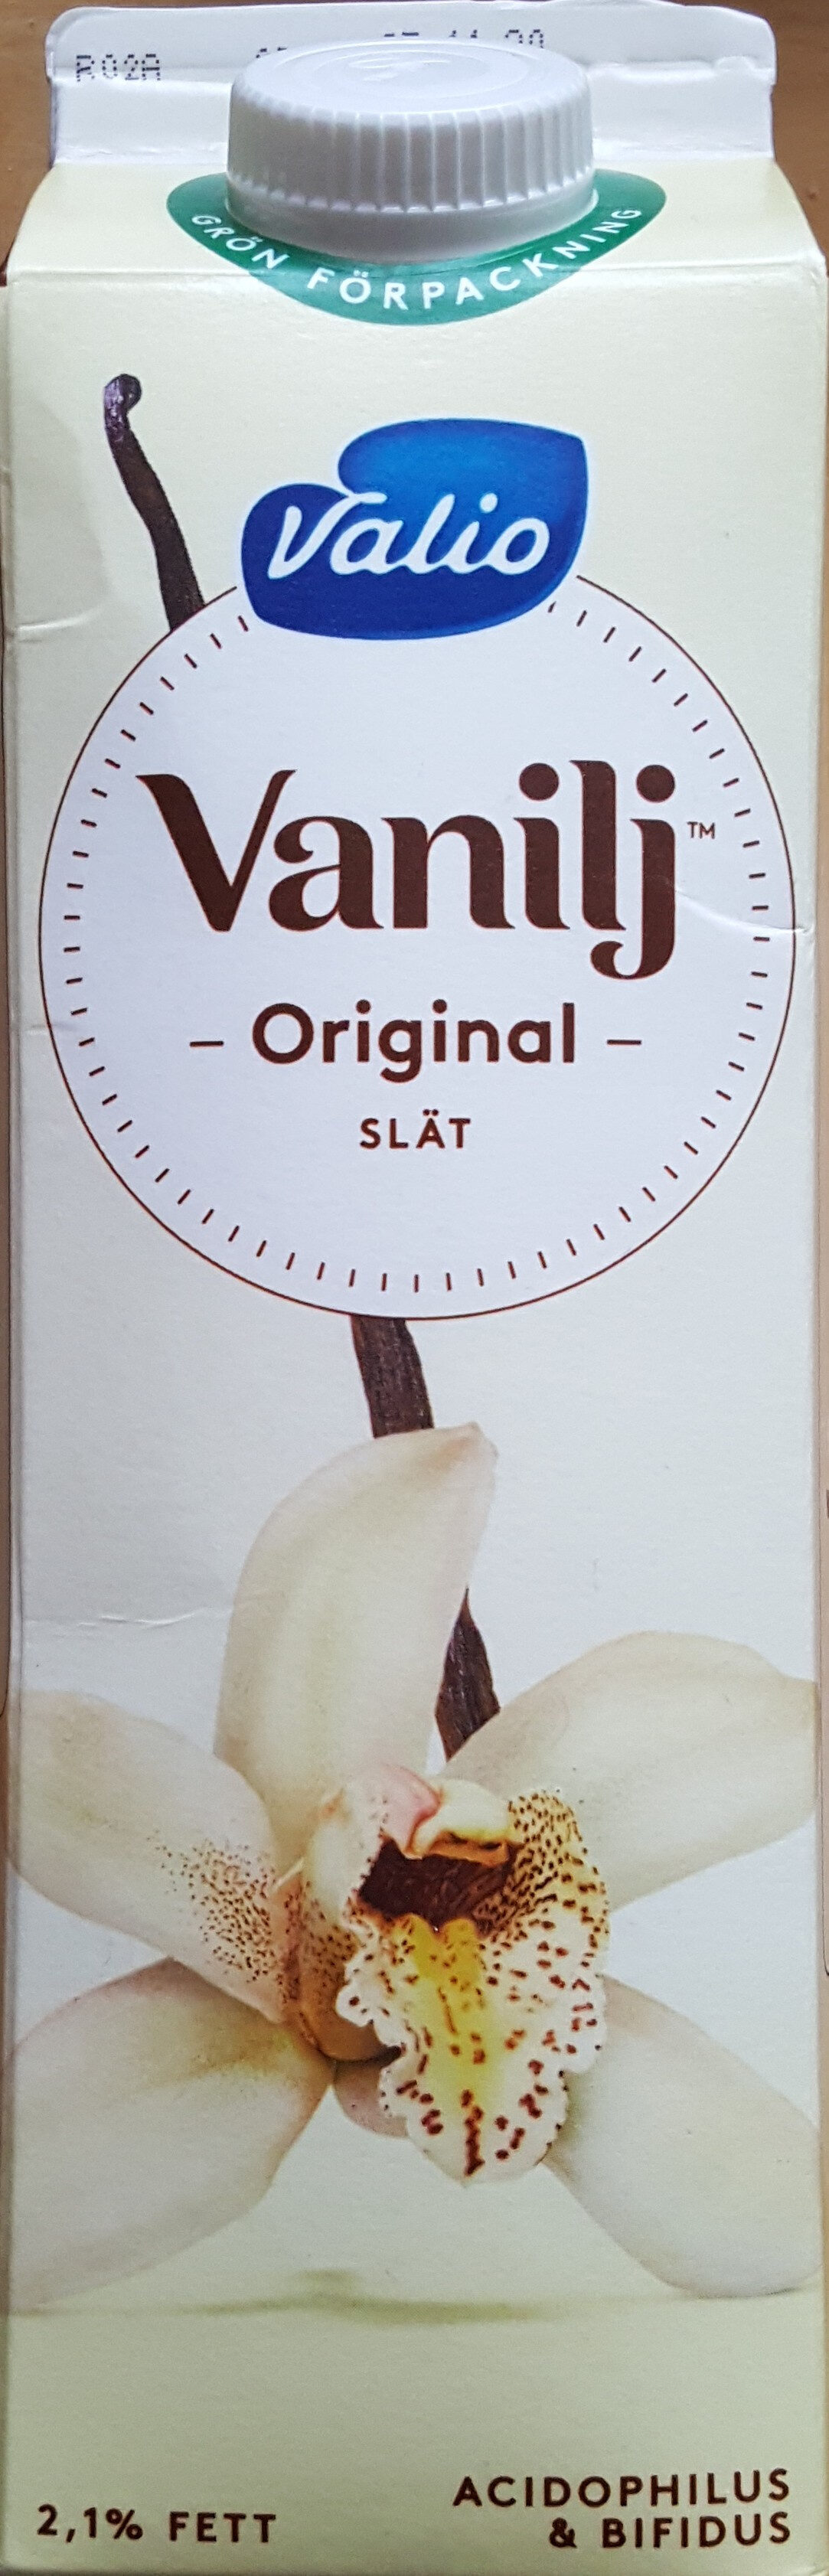 Valio Vanilj Original Slät - Produit - sv